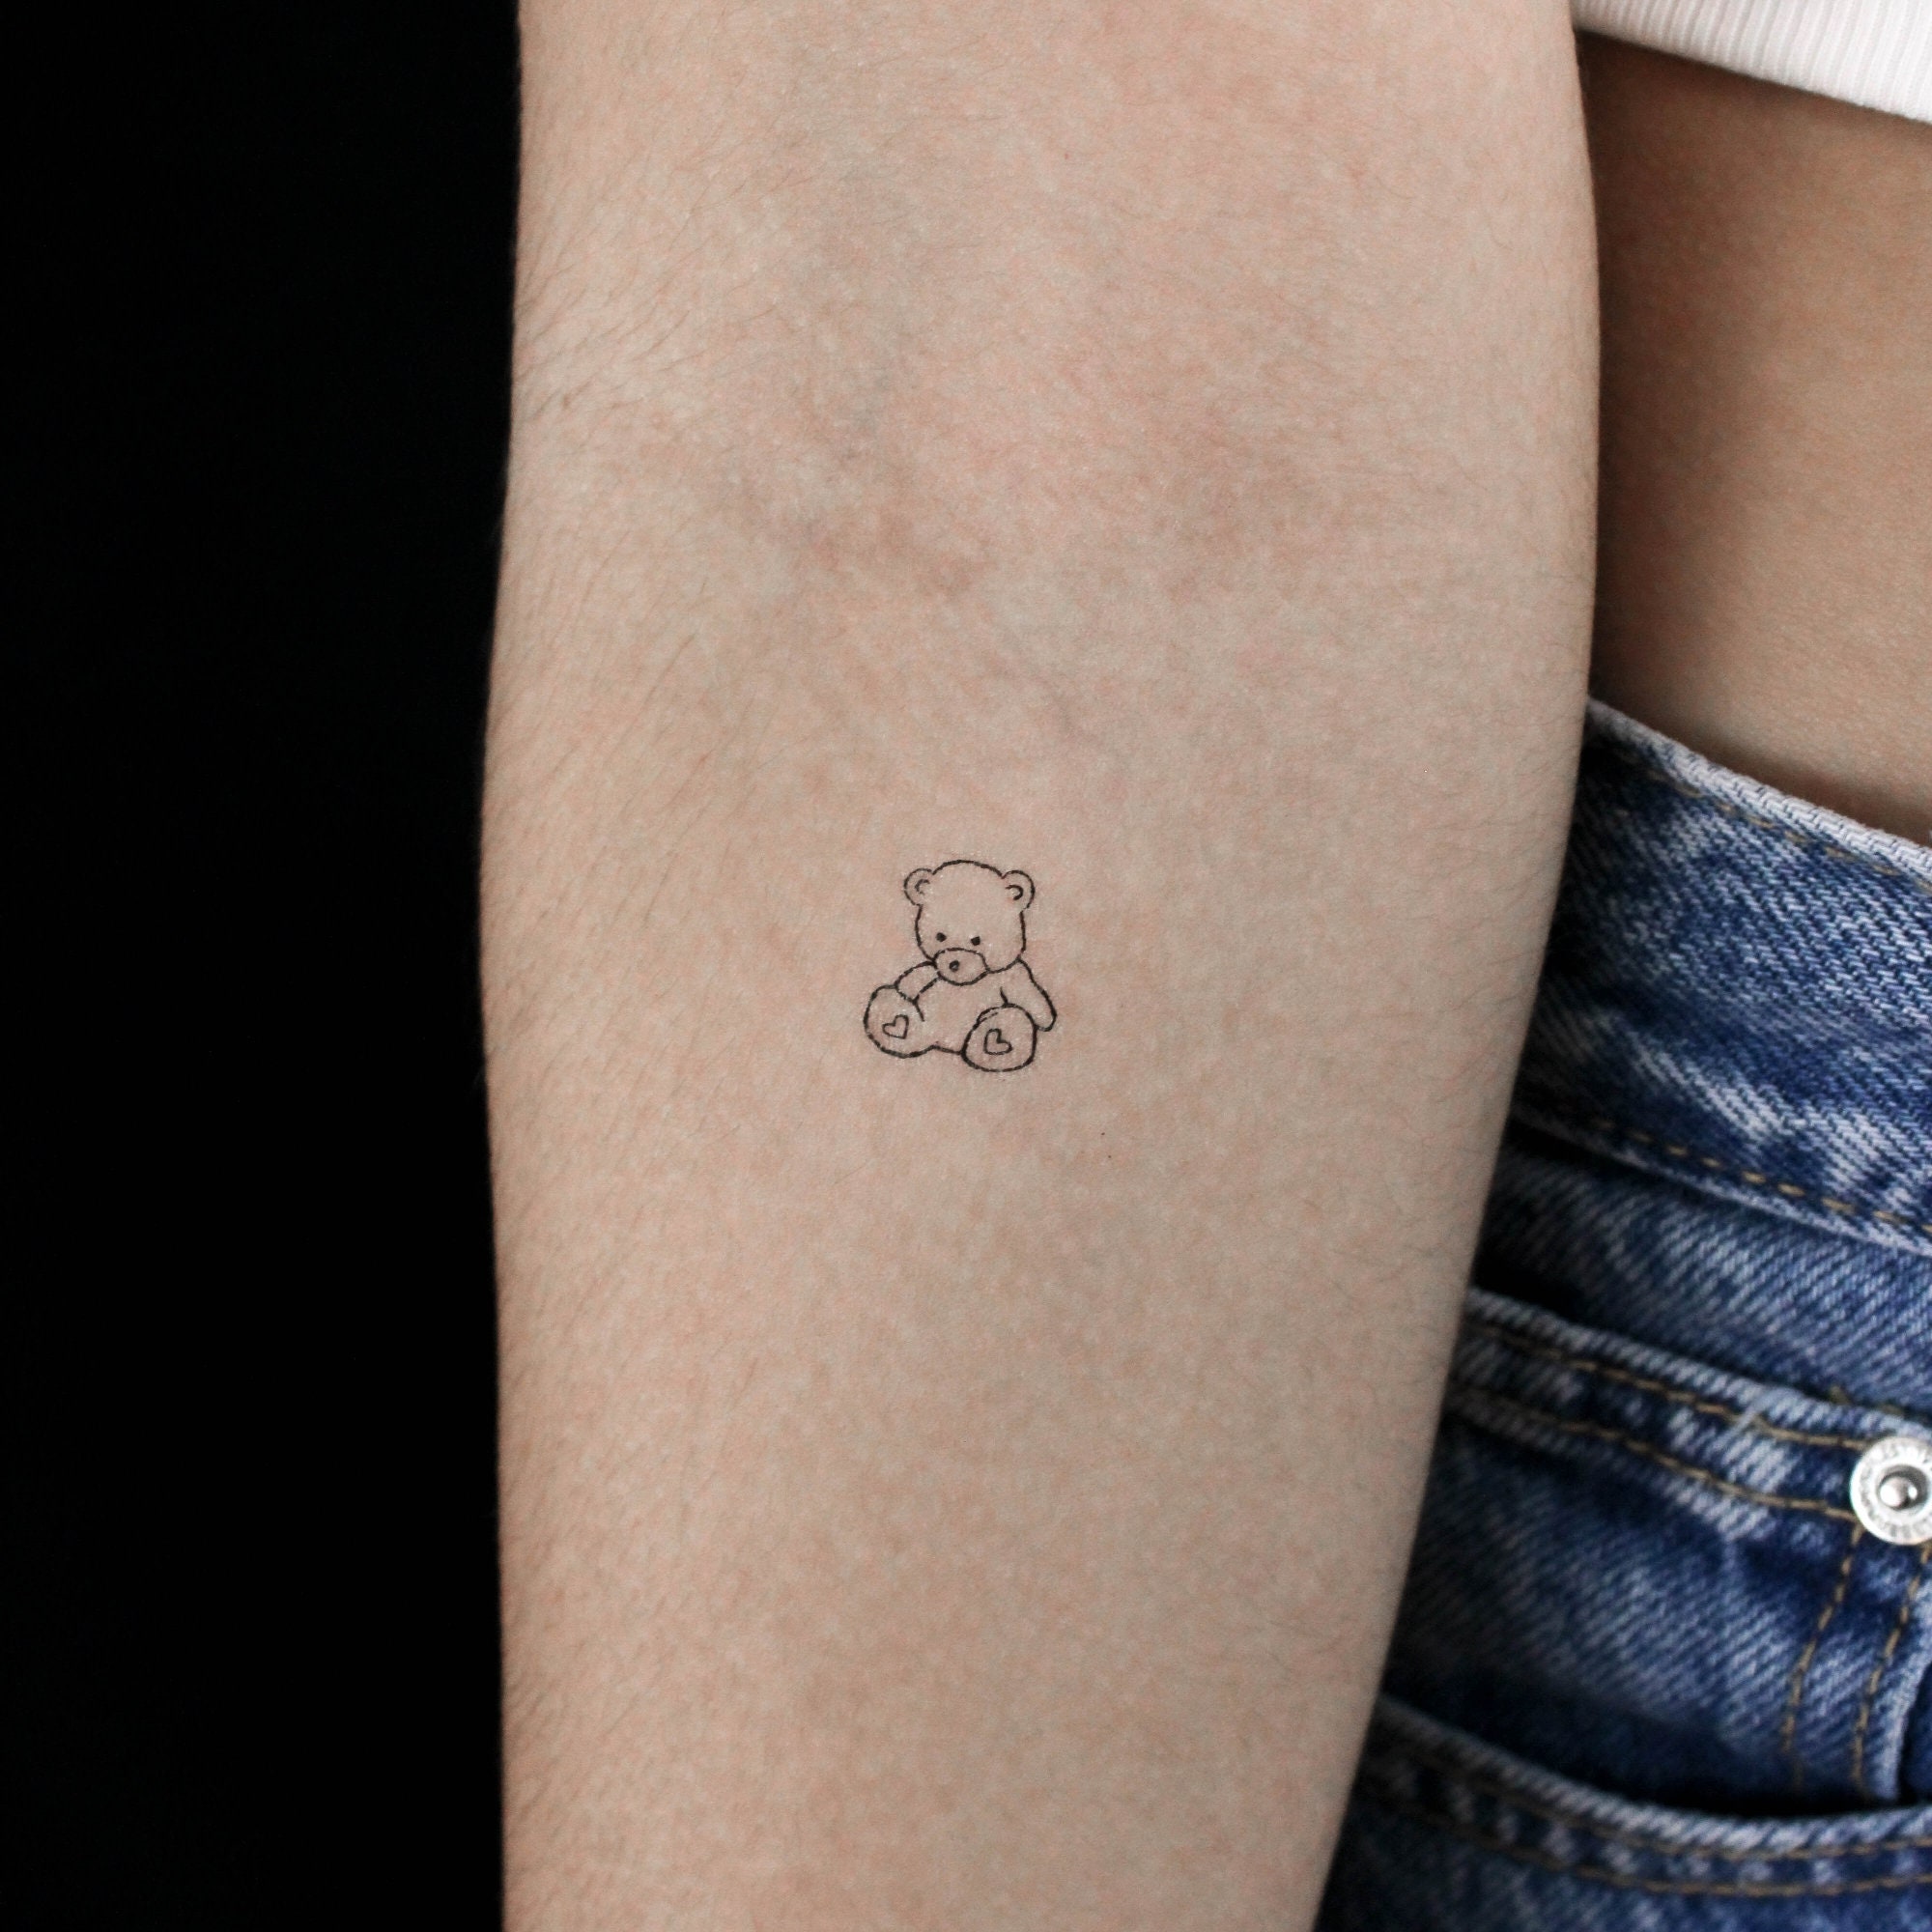 Pin by Angel Abeyta on Tattoo designs | Tattoos, Cool tattoos, Tattoo  designs